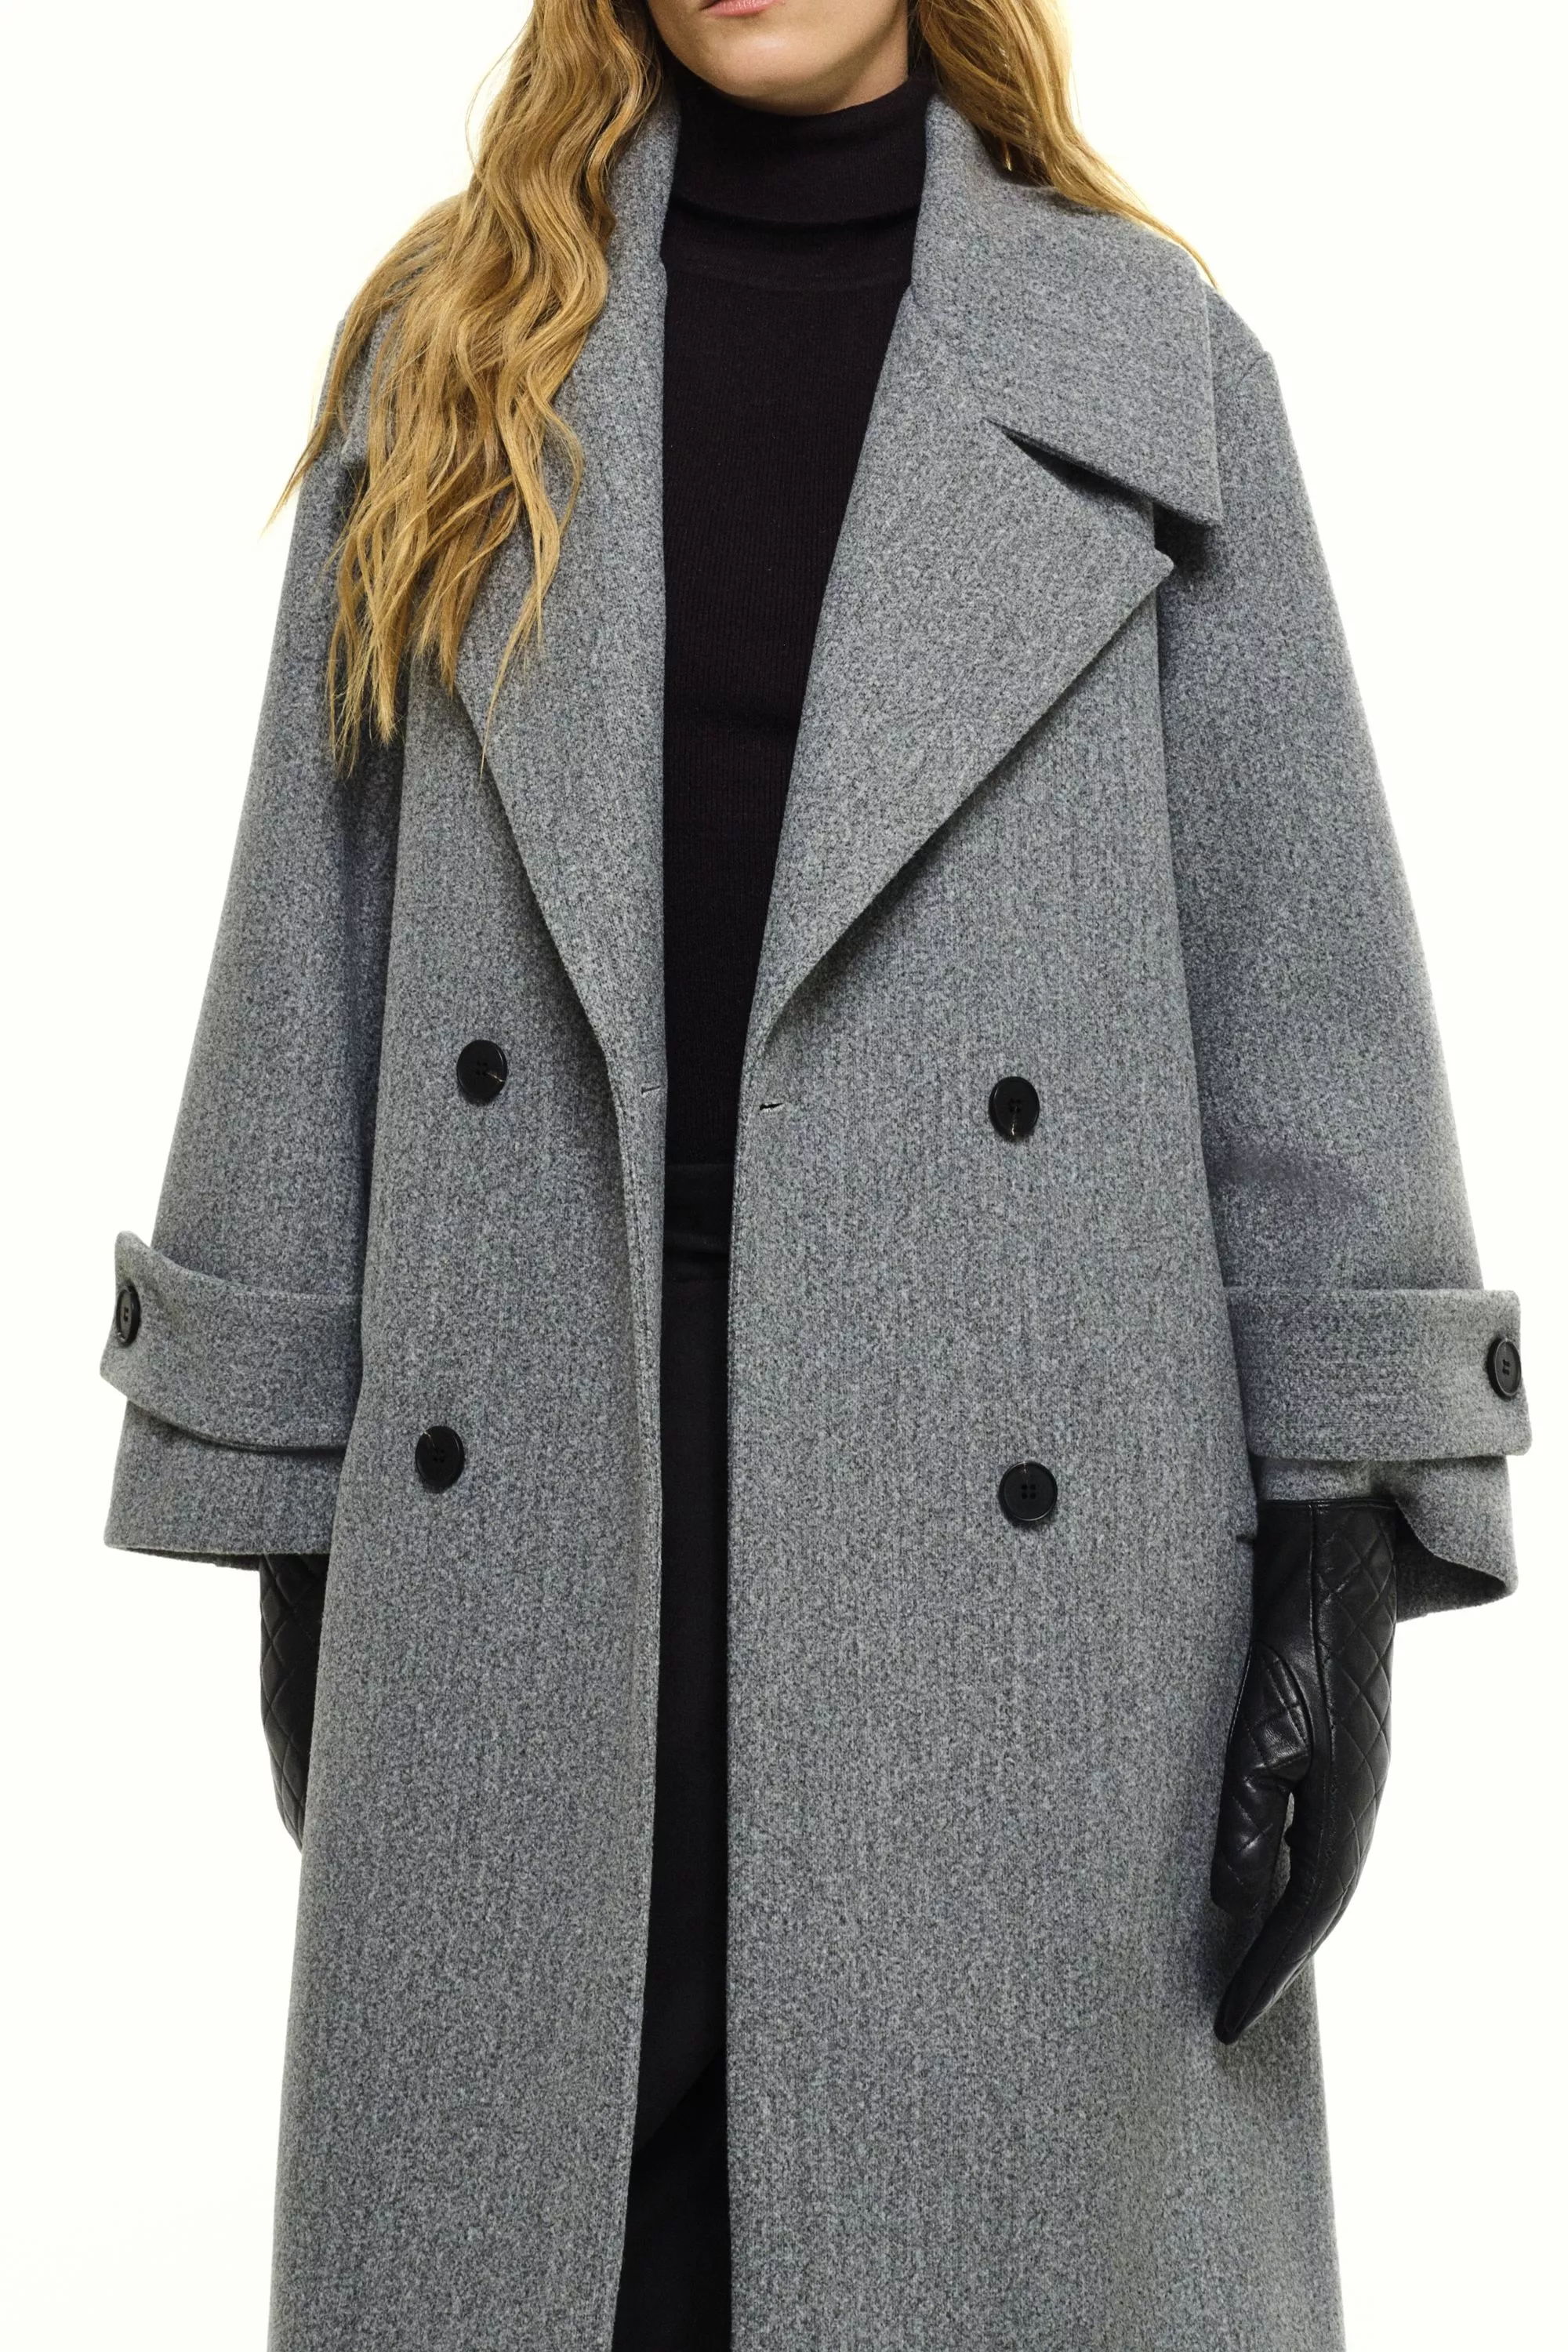 Damen Zweireihiger Mantel in Grau von Ricano, Detailansicht am Model